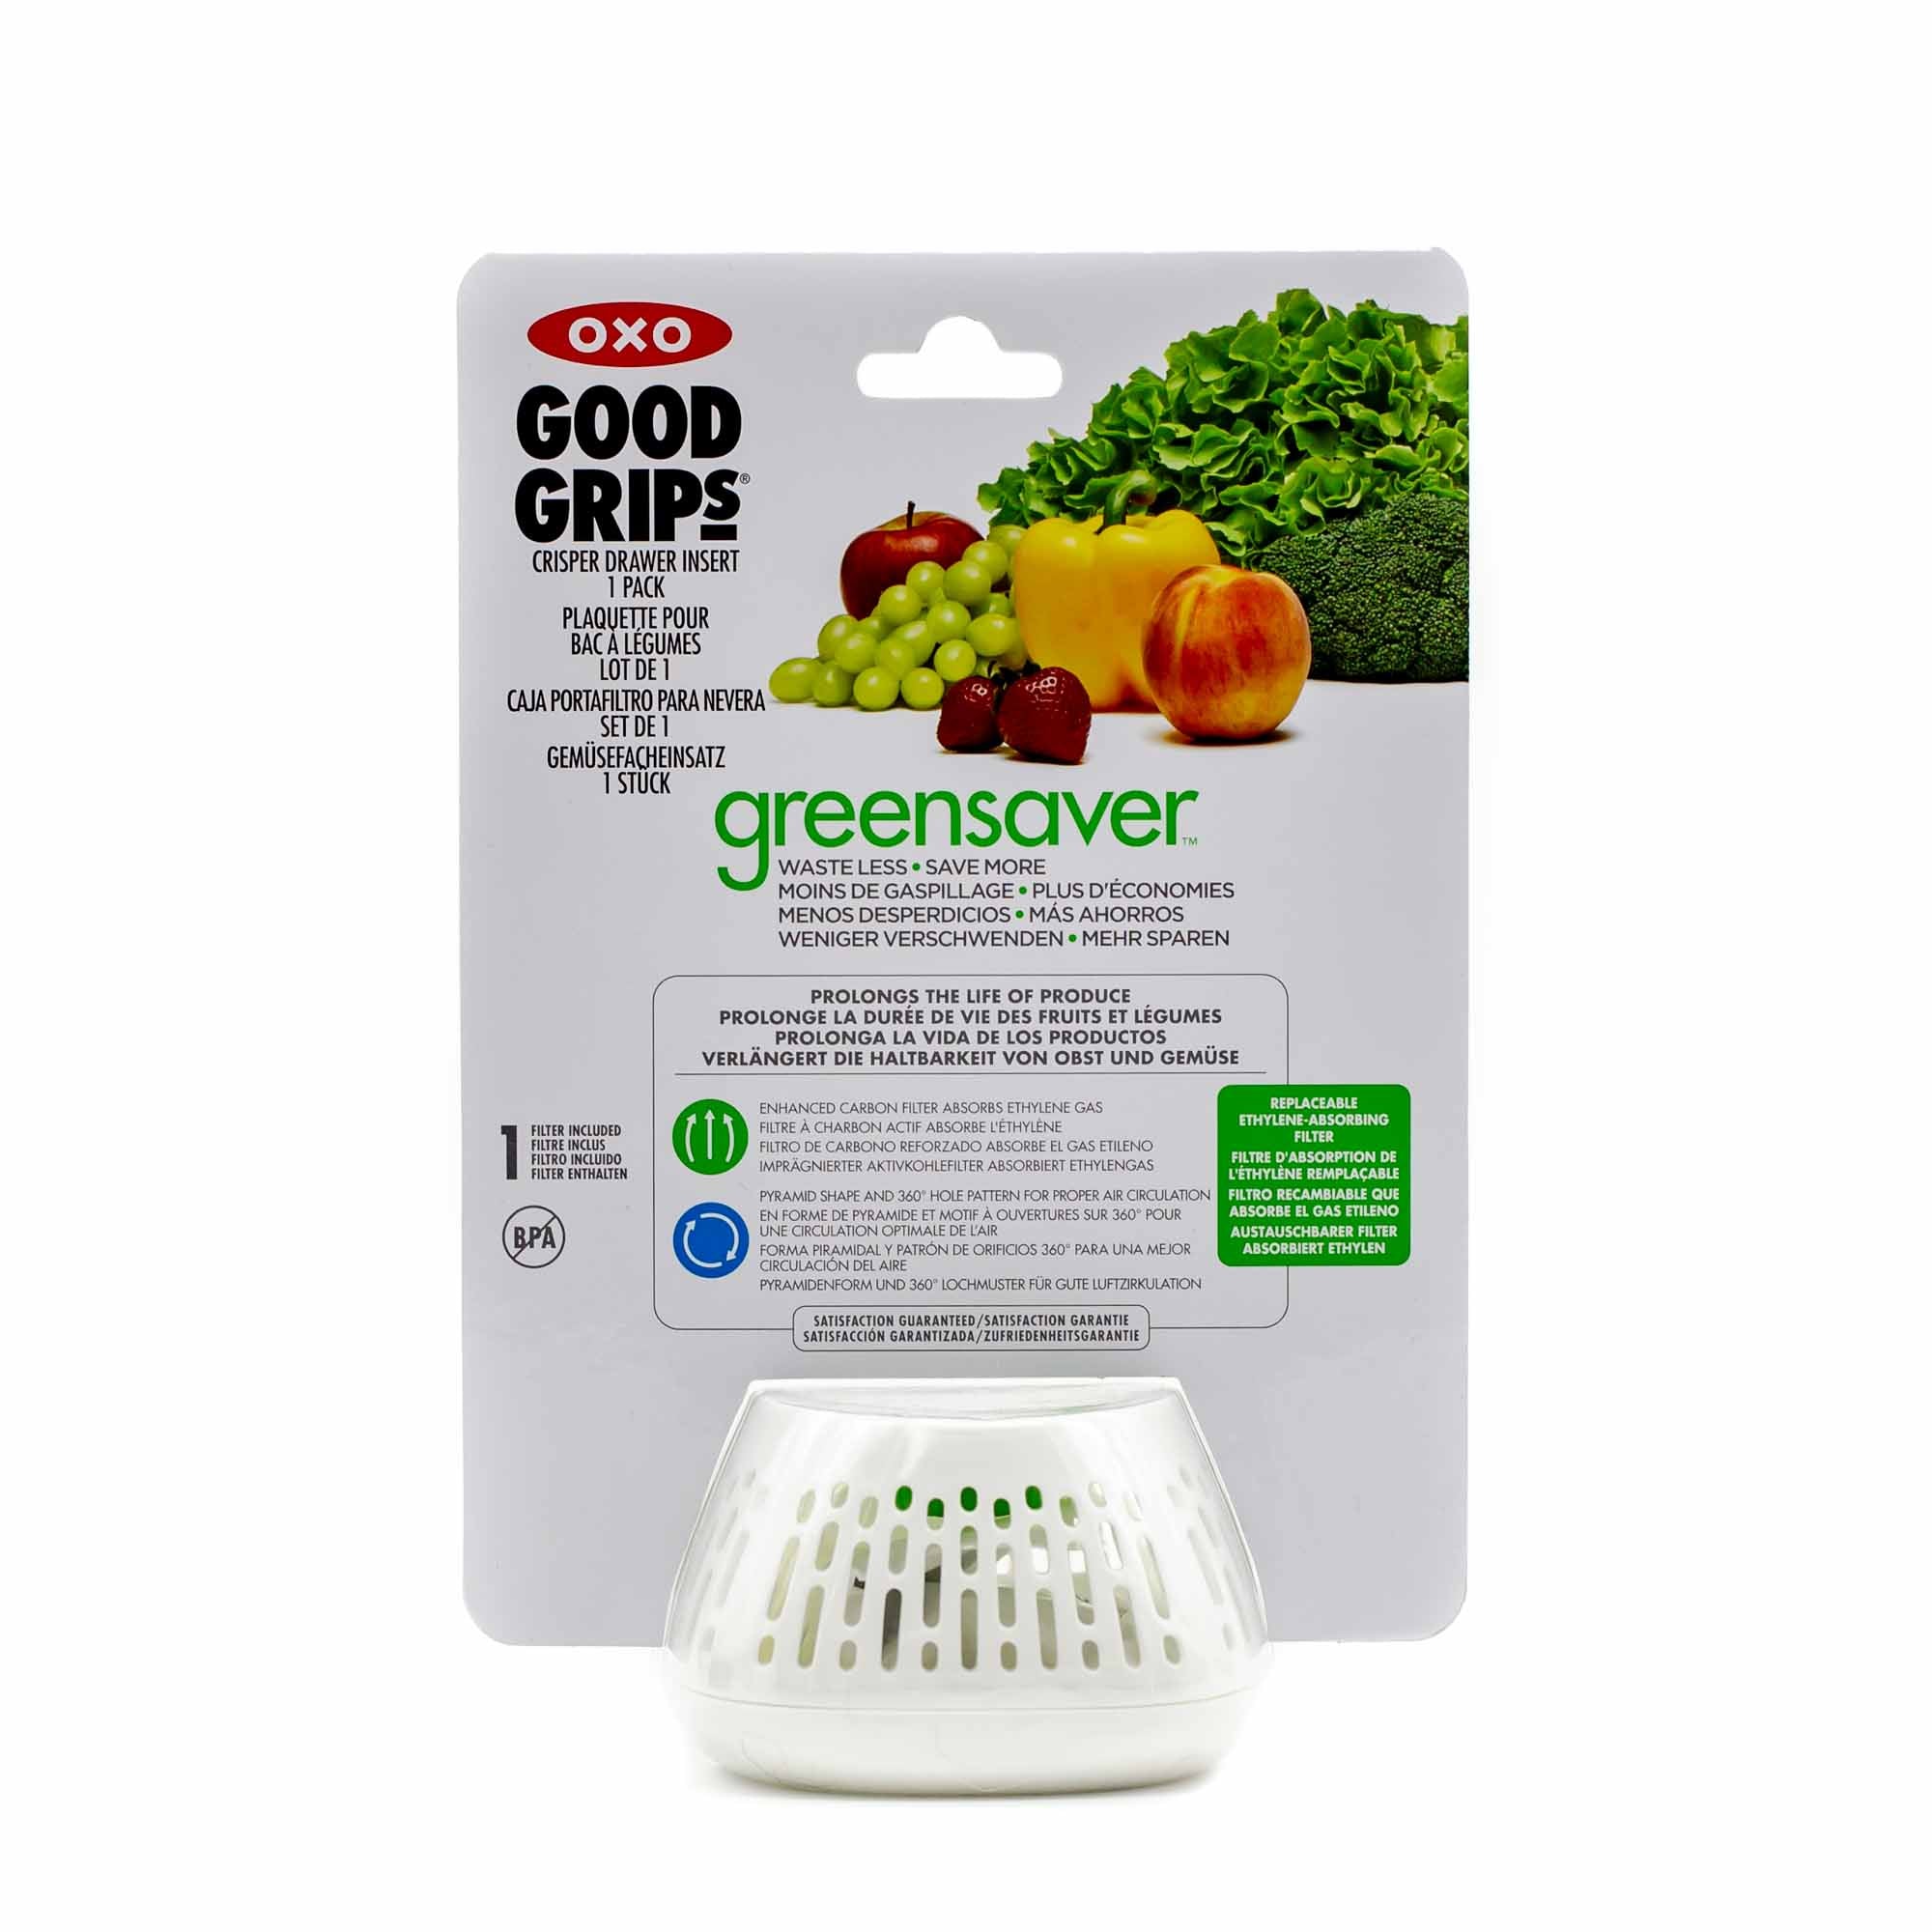 OXO Good Grips GreenSaver Crisper Insert Refills - 4 pack